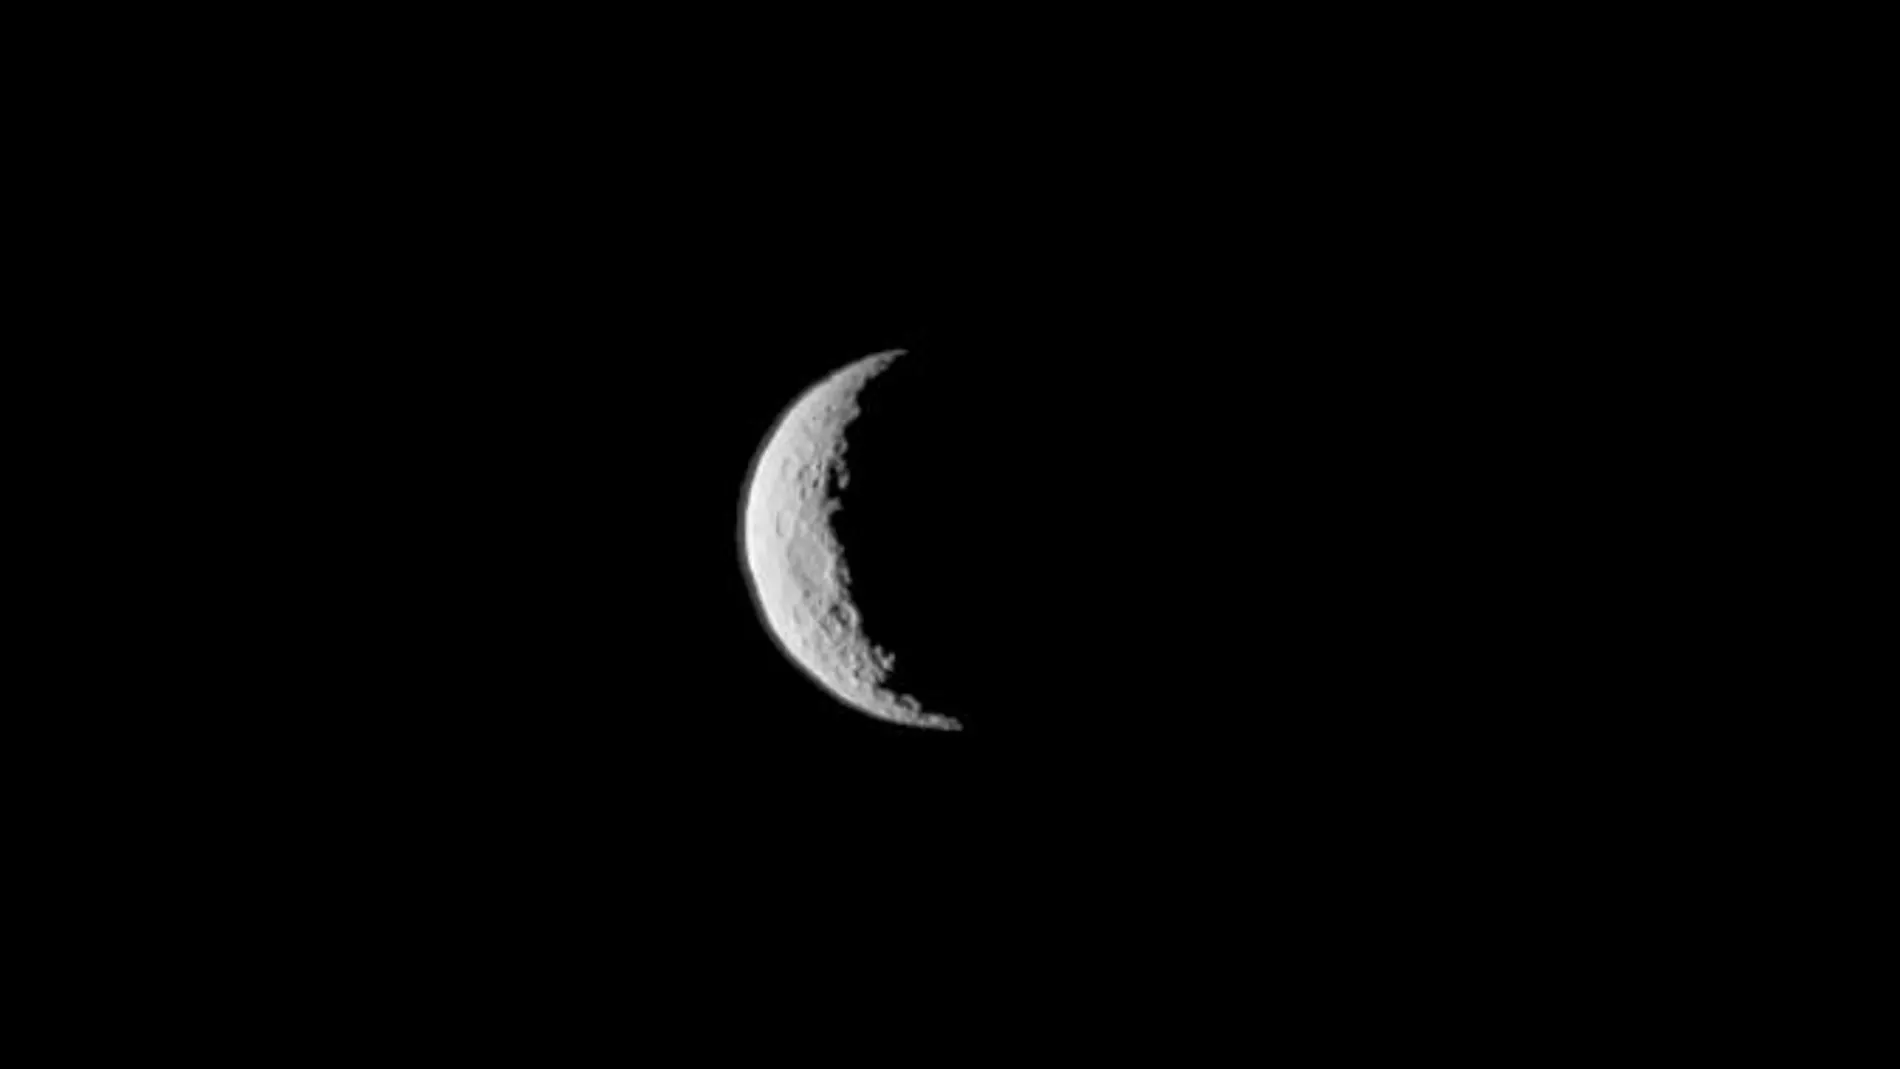 Ceres observado por la sonda espacial Dawn el pasado 1 de Marzo, a una distancia de 48.000 kilómetros